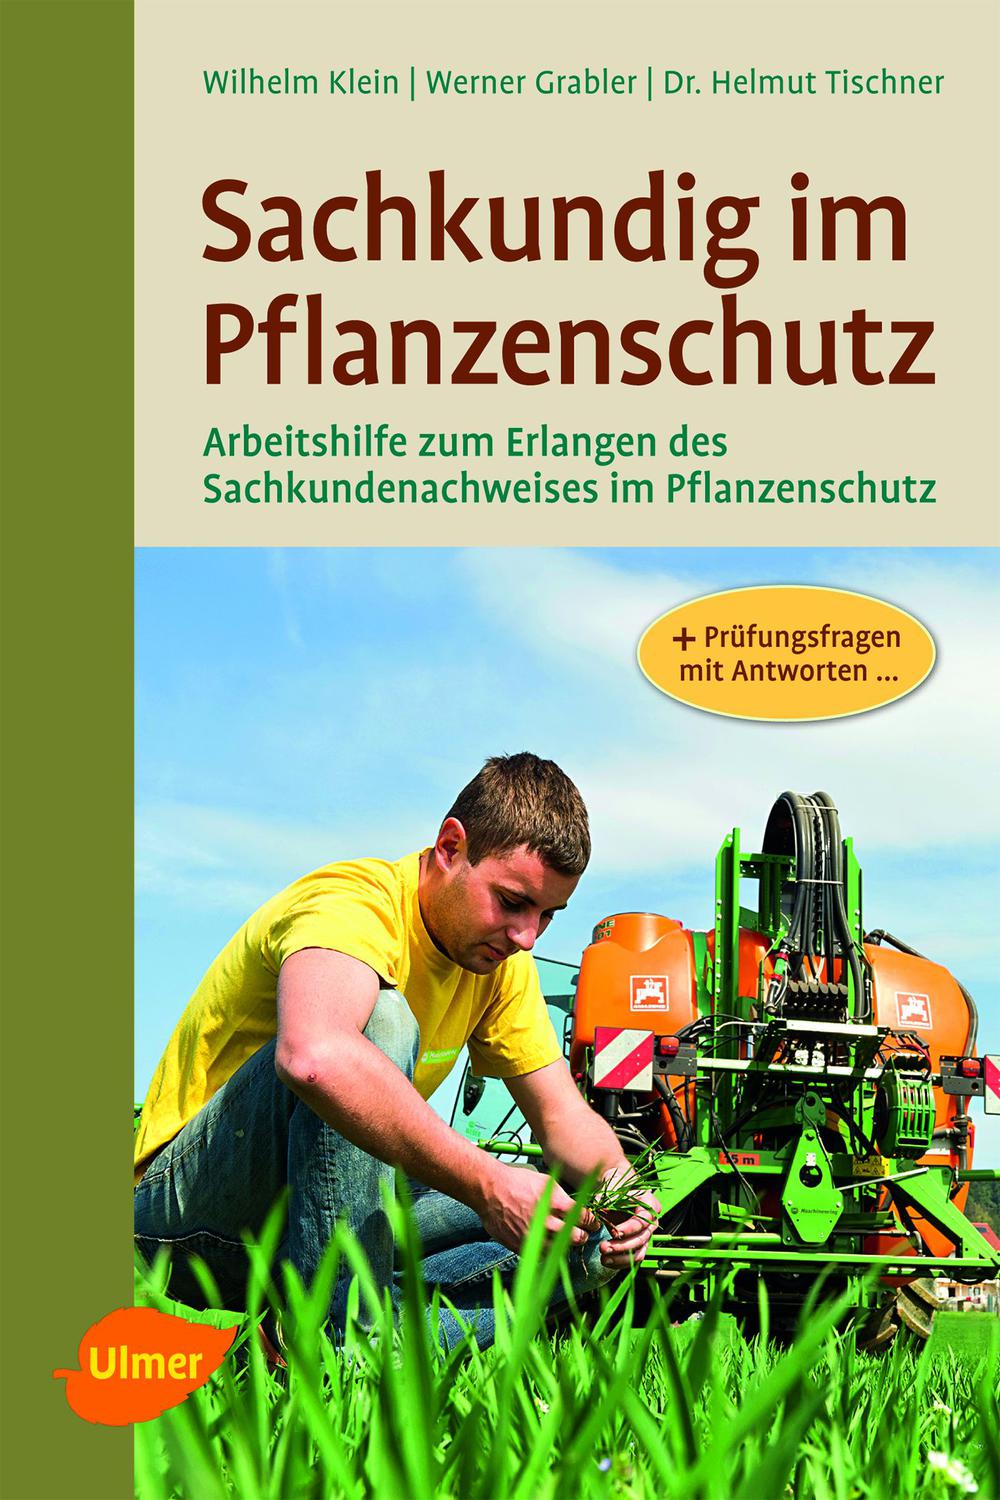 Sachkundig im Pflanzenschutz - Wilhelm Klein, Werner Grabler, Helmut Tischner,,